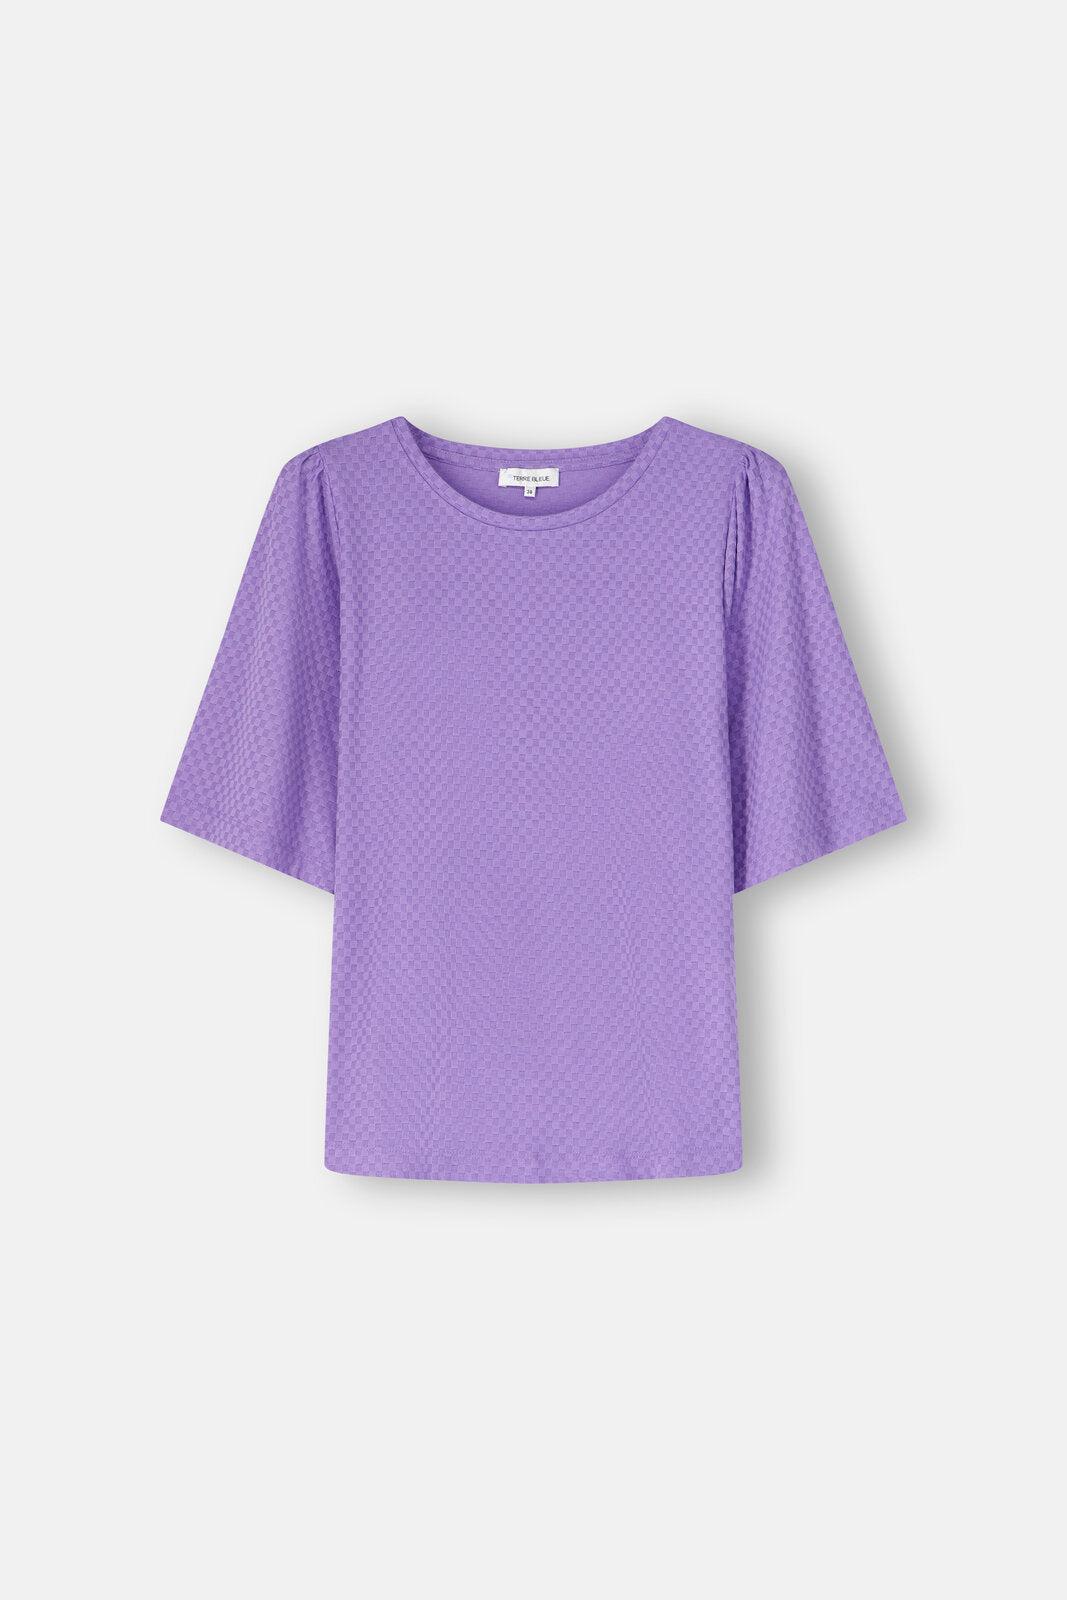 T-Shirt Violet Terre Bleue ( Brit/334 )